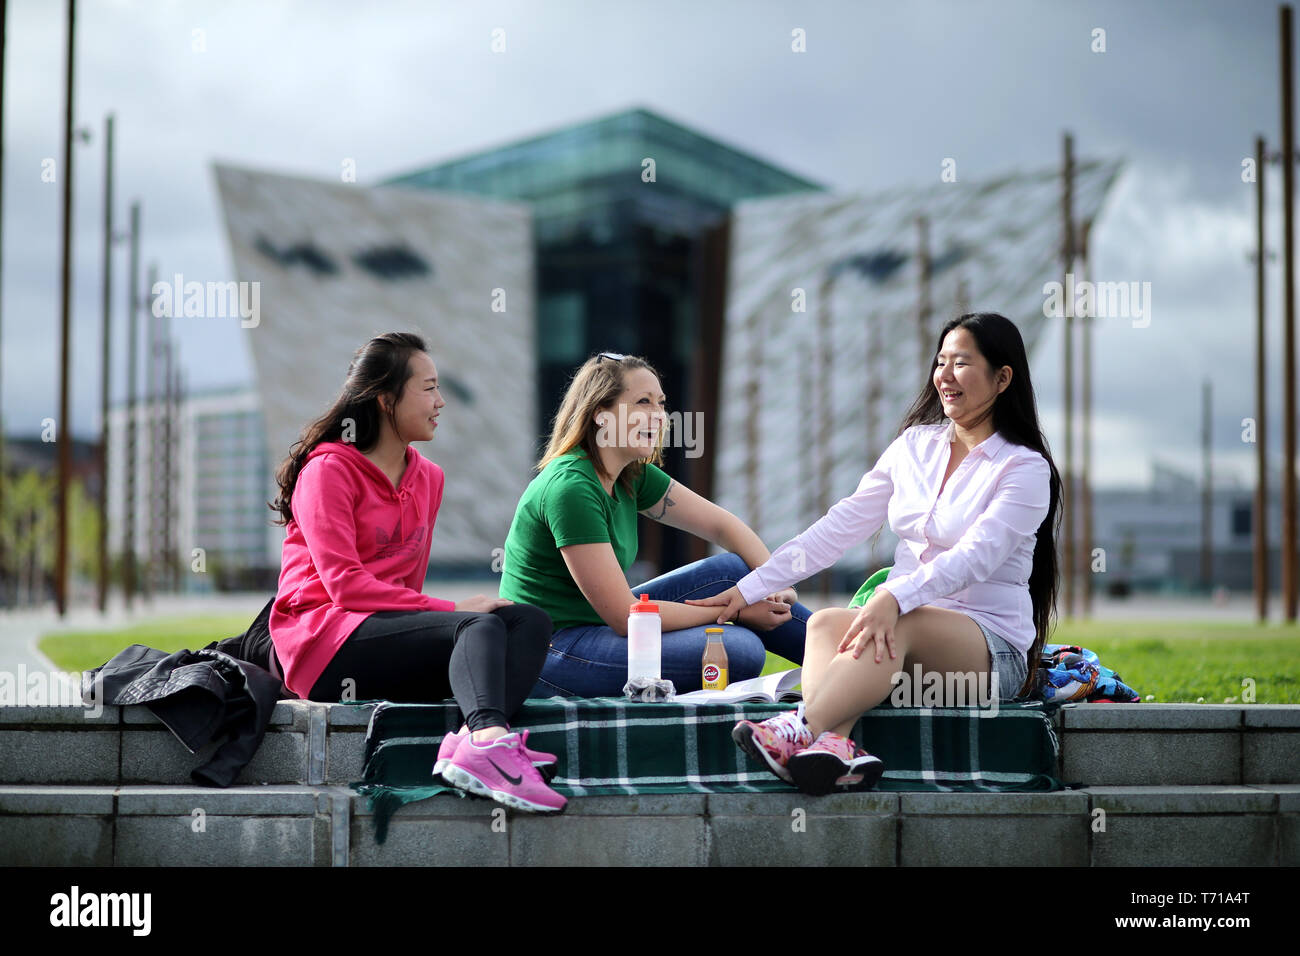 Los estudiantes internacionales tour alrededor de Irlanda del Norte, la mayoría de los hot spots turísticos alrededor del Condado de Antrim, Irlanda del Norte. Foto/Paul McErlane Foto de stock